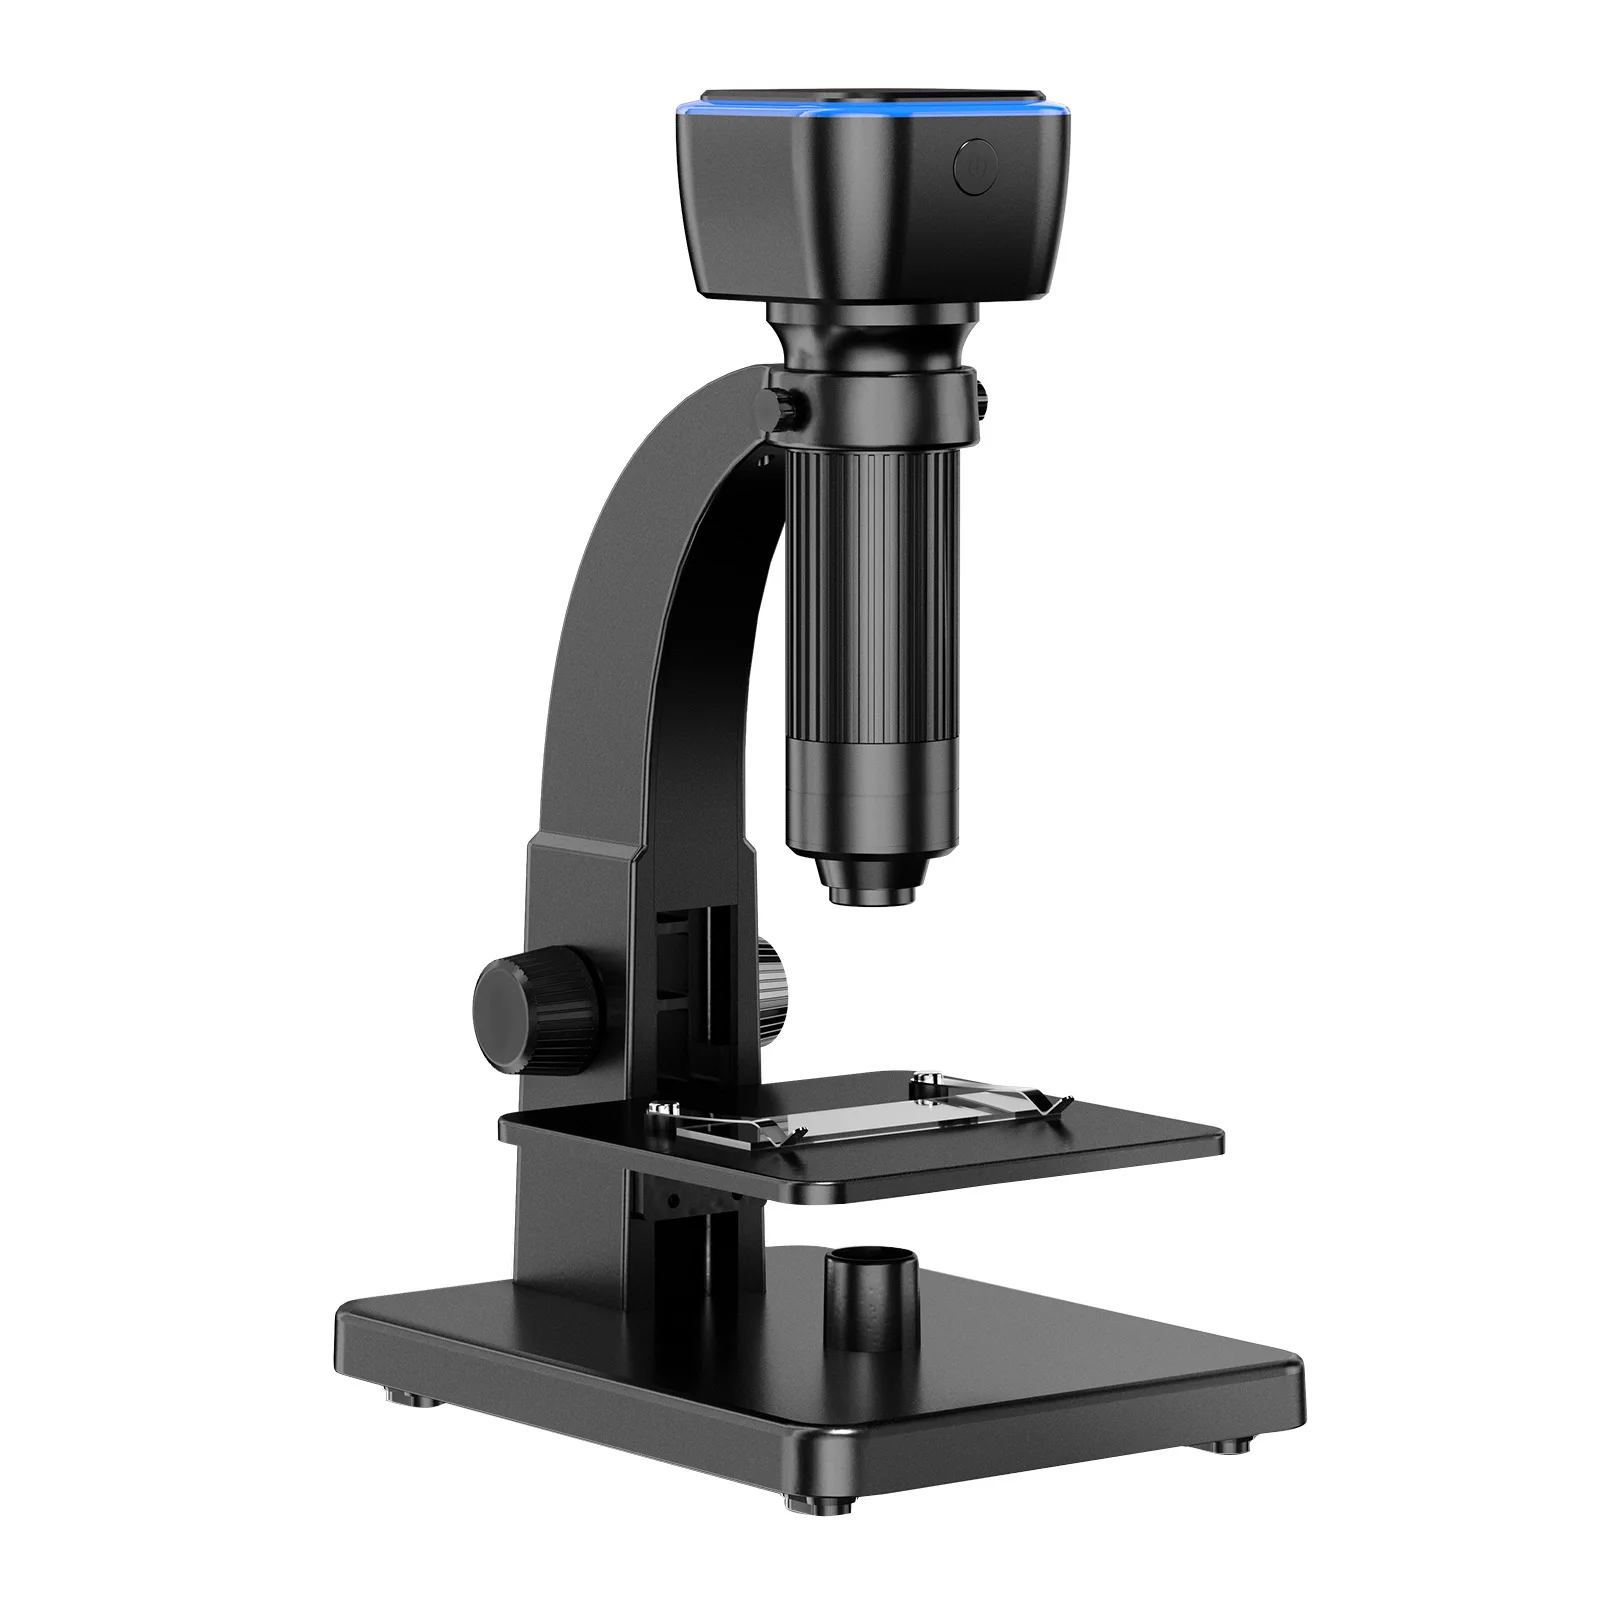 

Цифровой микроскоп с двойным объективом, 5,0 МП